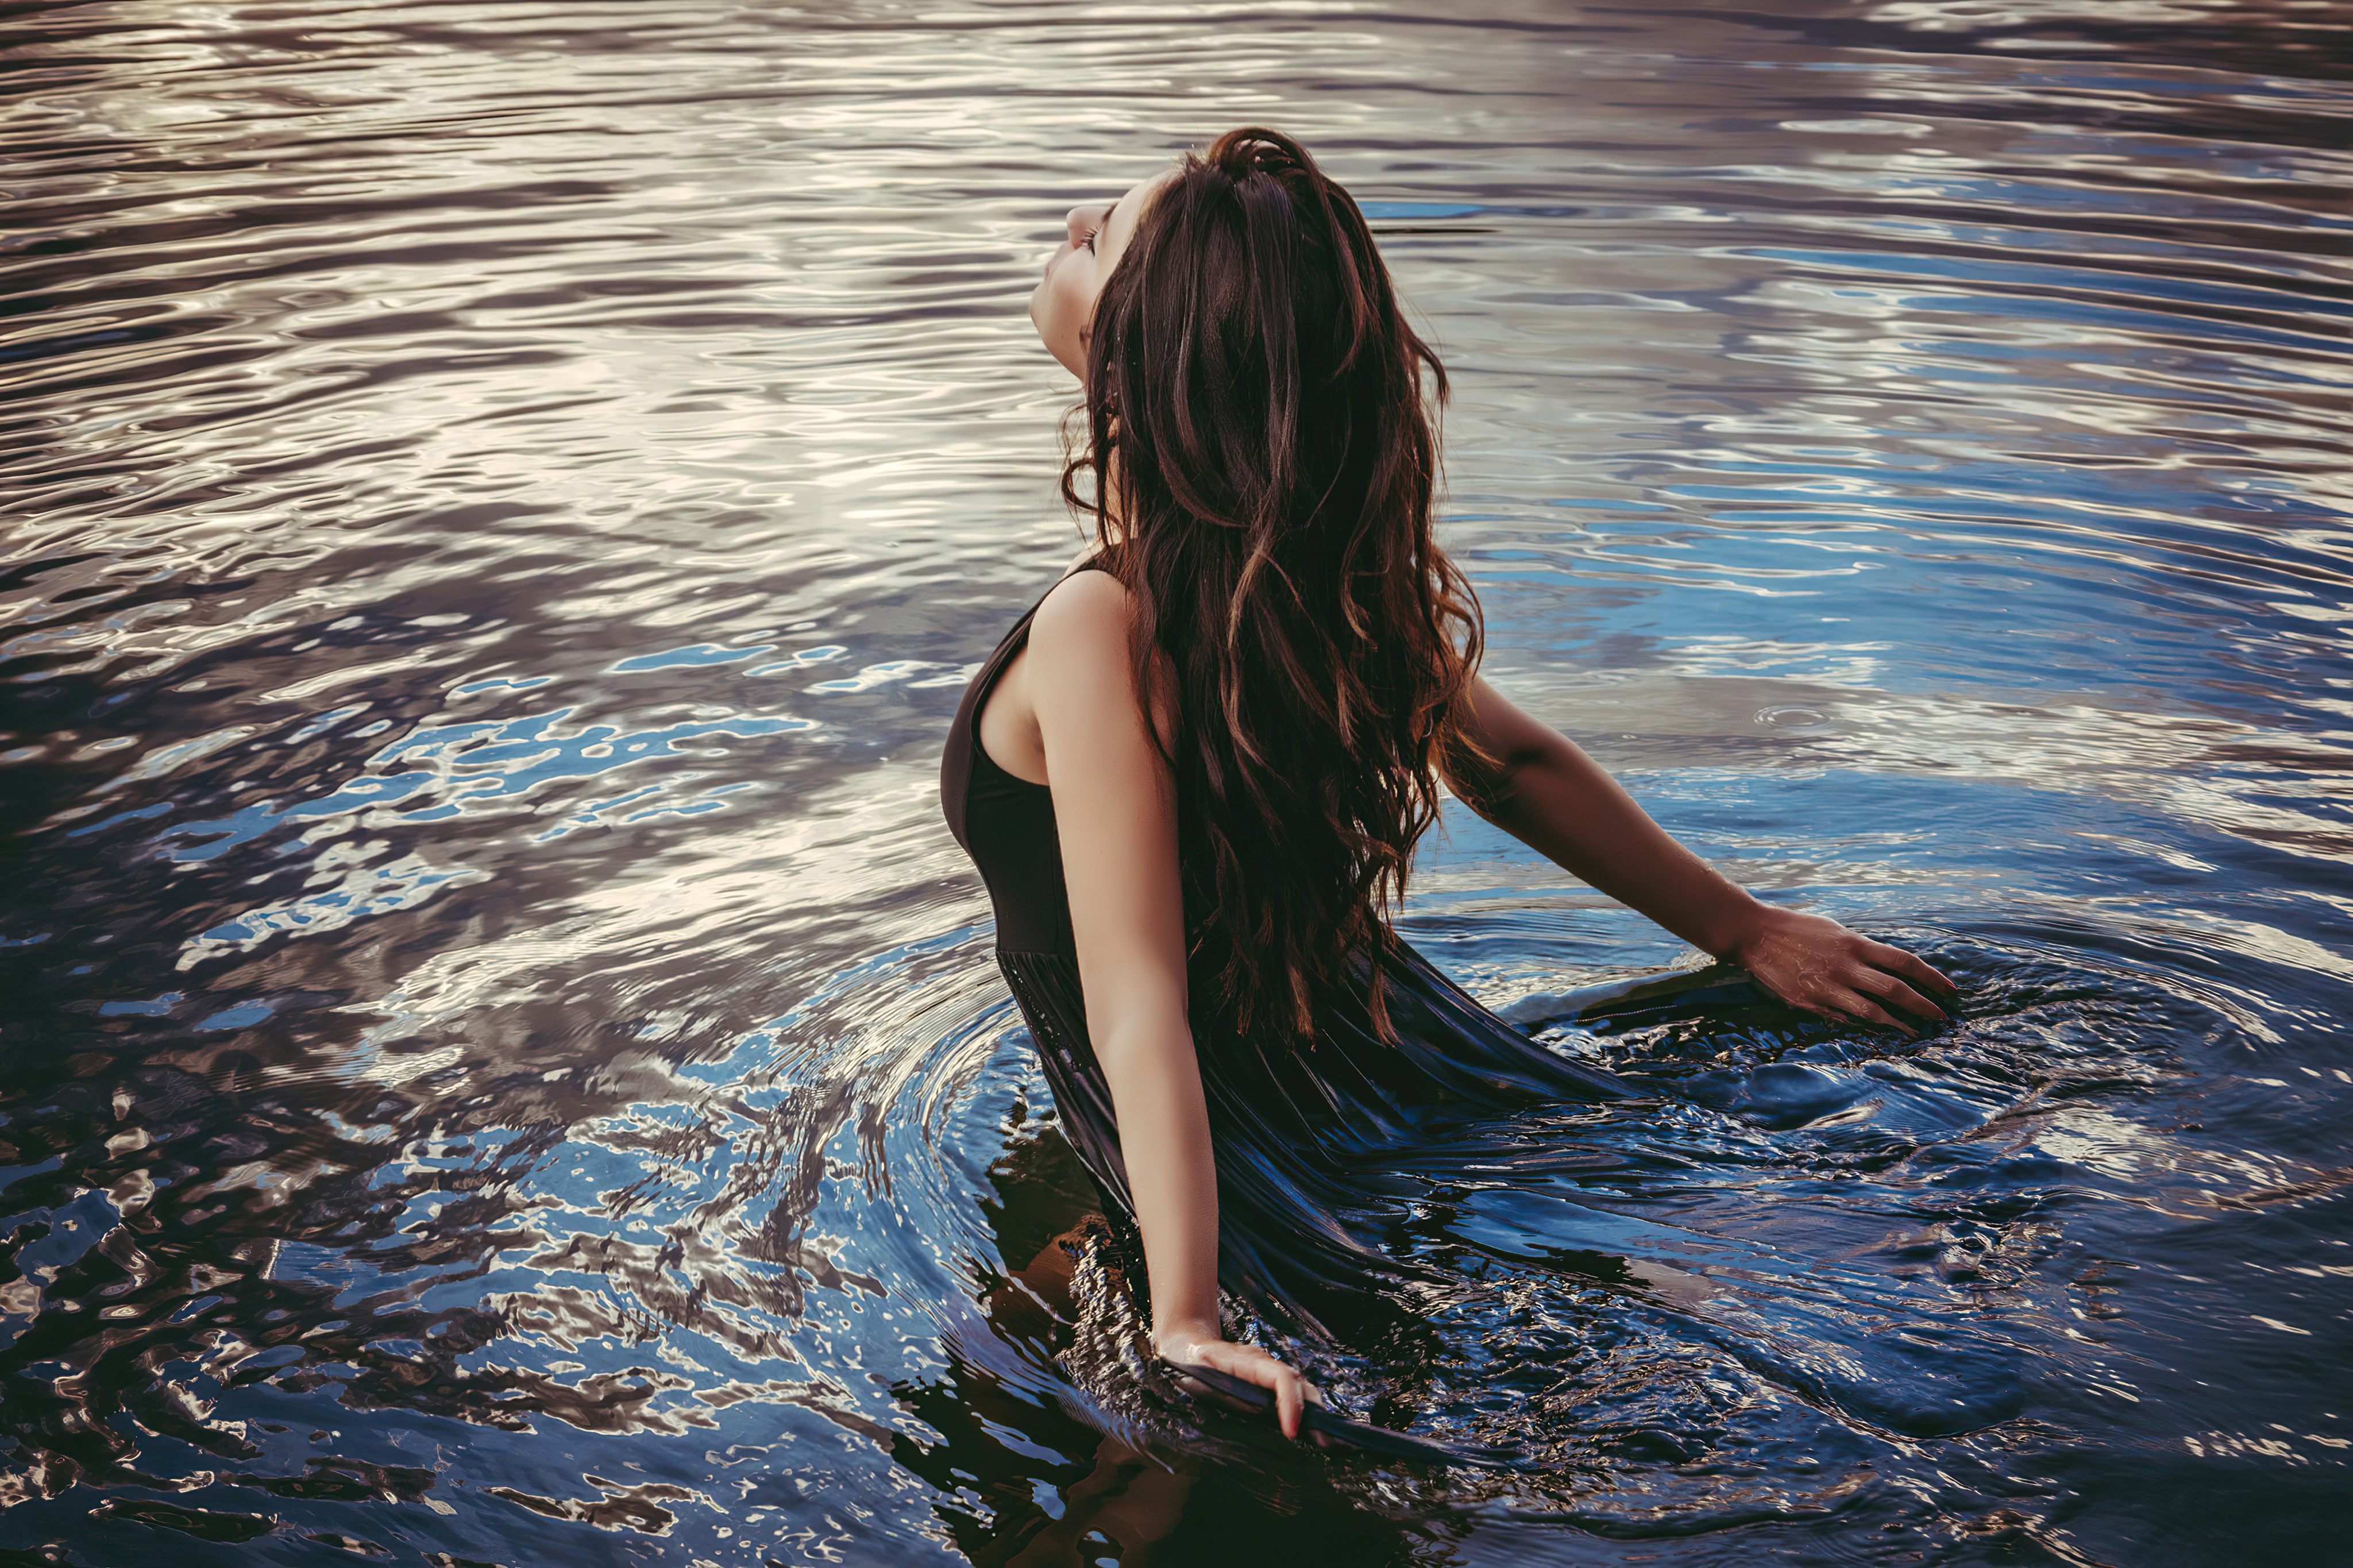 Купалась в платье. Фотосессия в воде. Фотосессия в воде в платье. Девушка в воде. Девушка у реки.